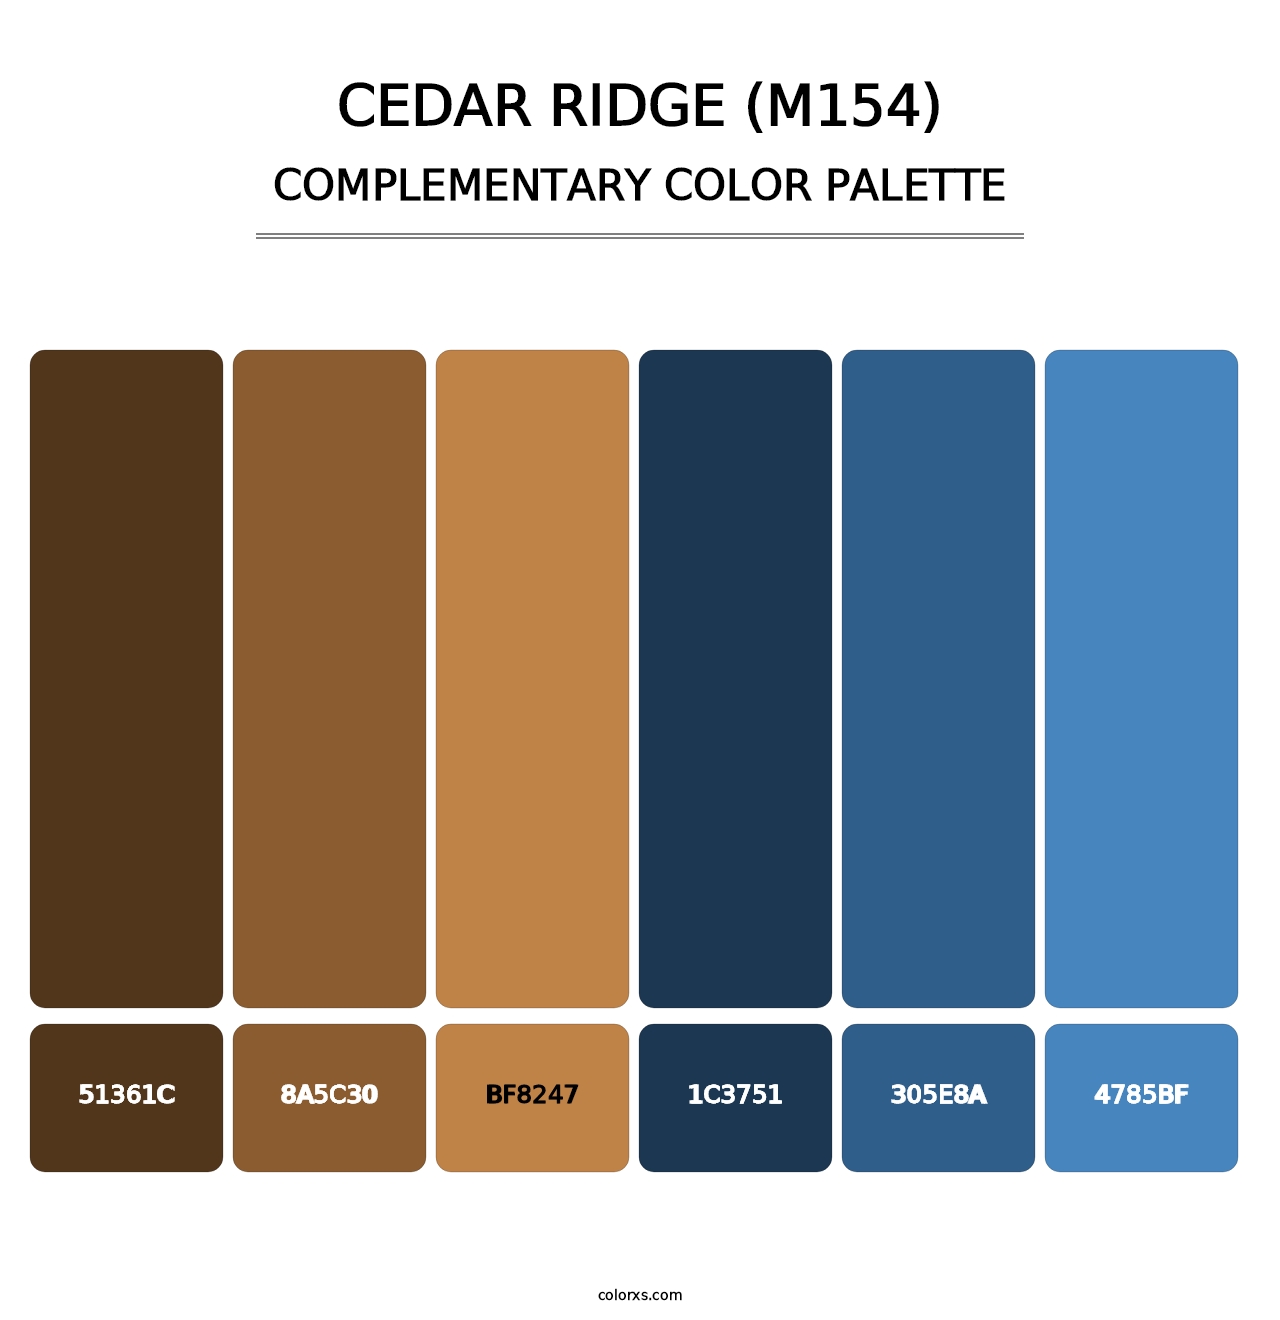 Cedar Ridge (M154) - Complementary Color Palette